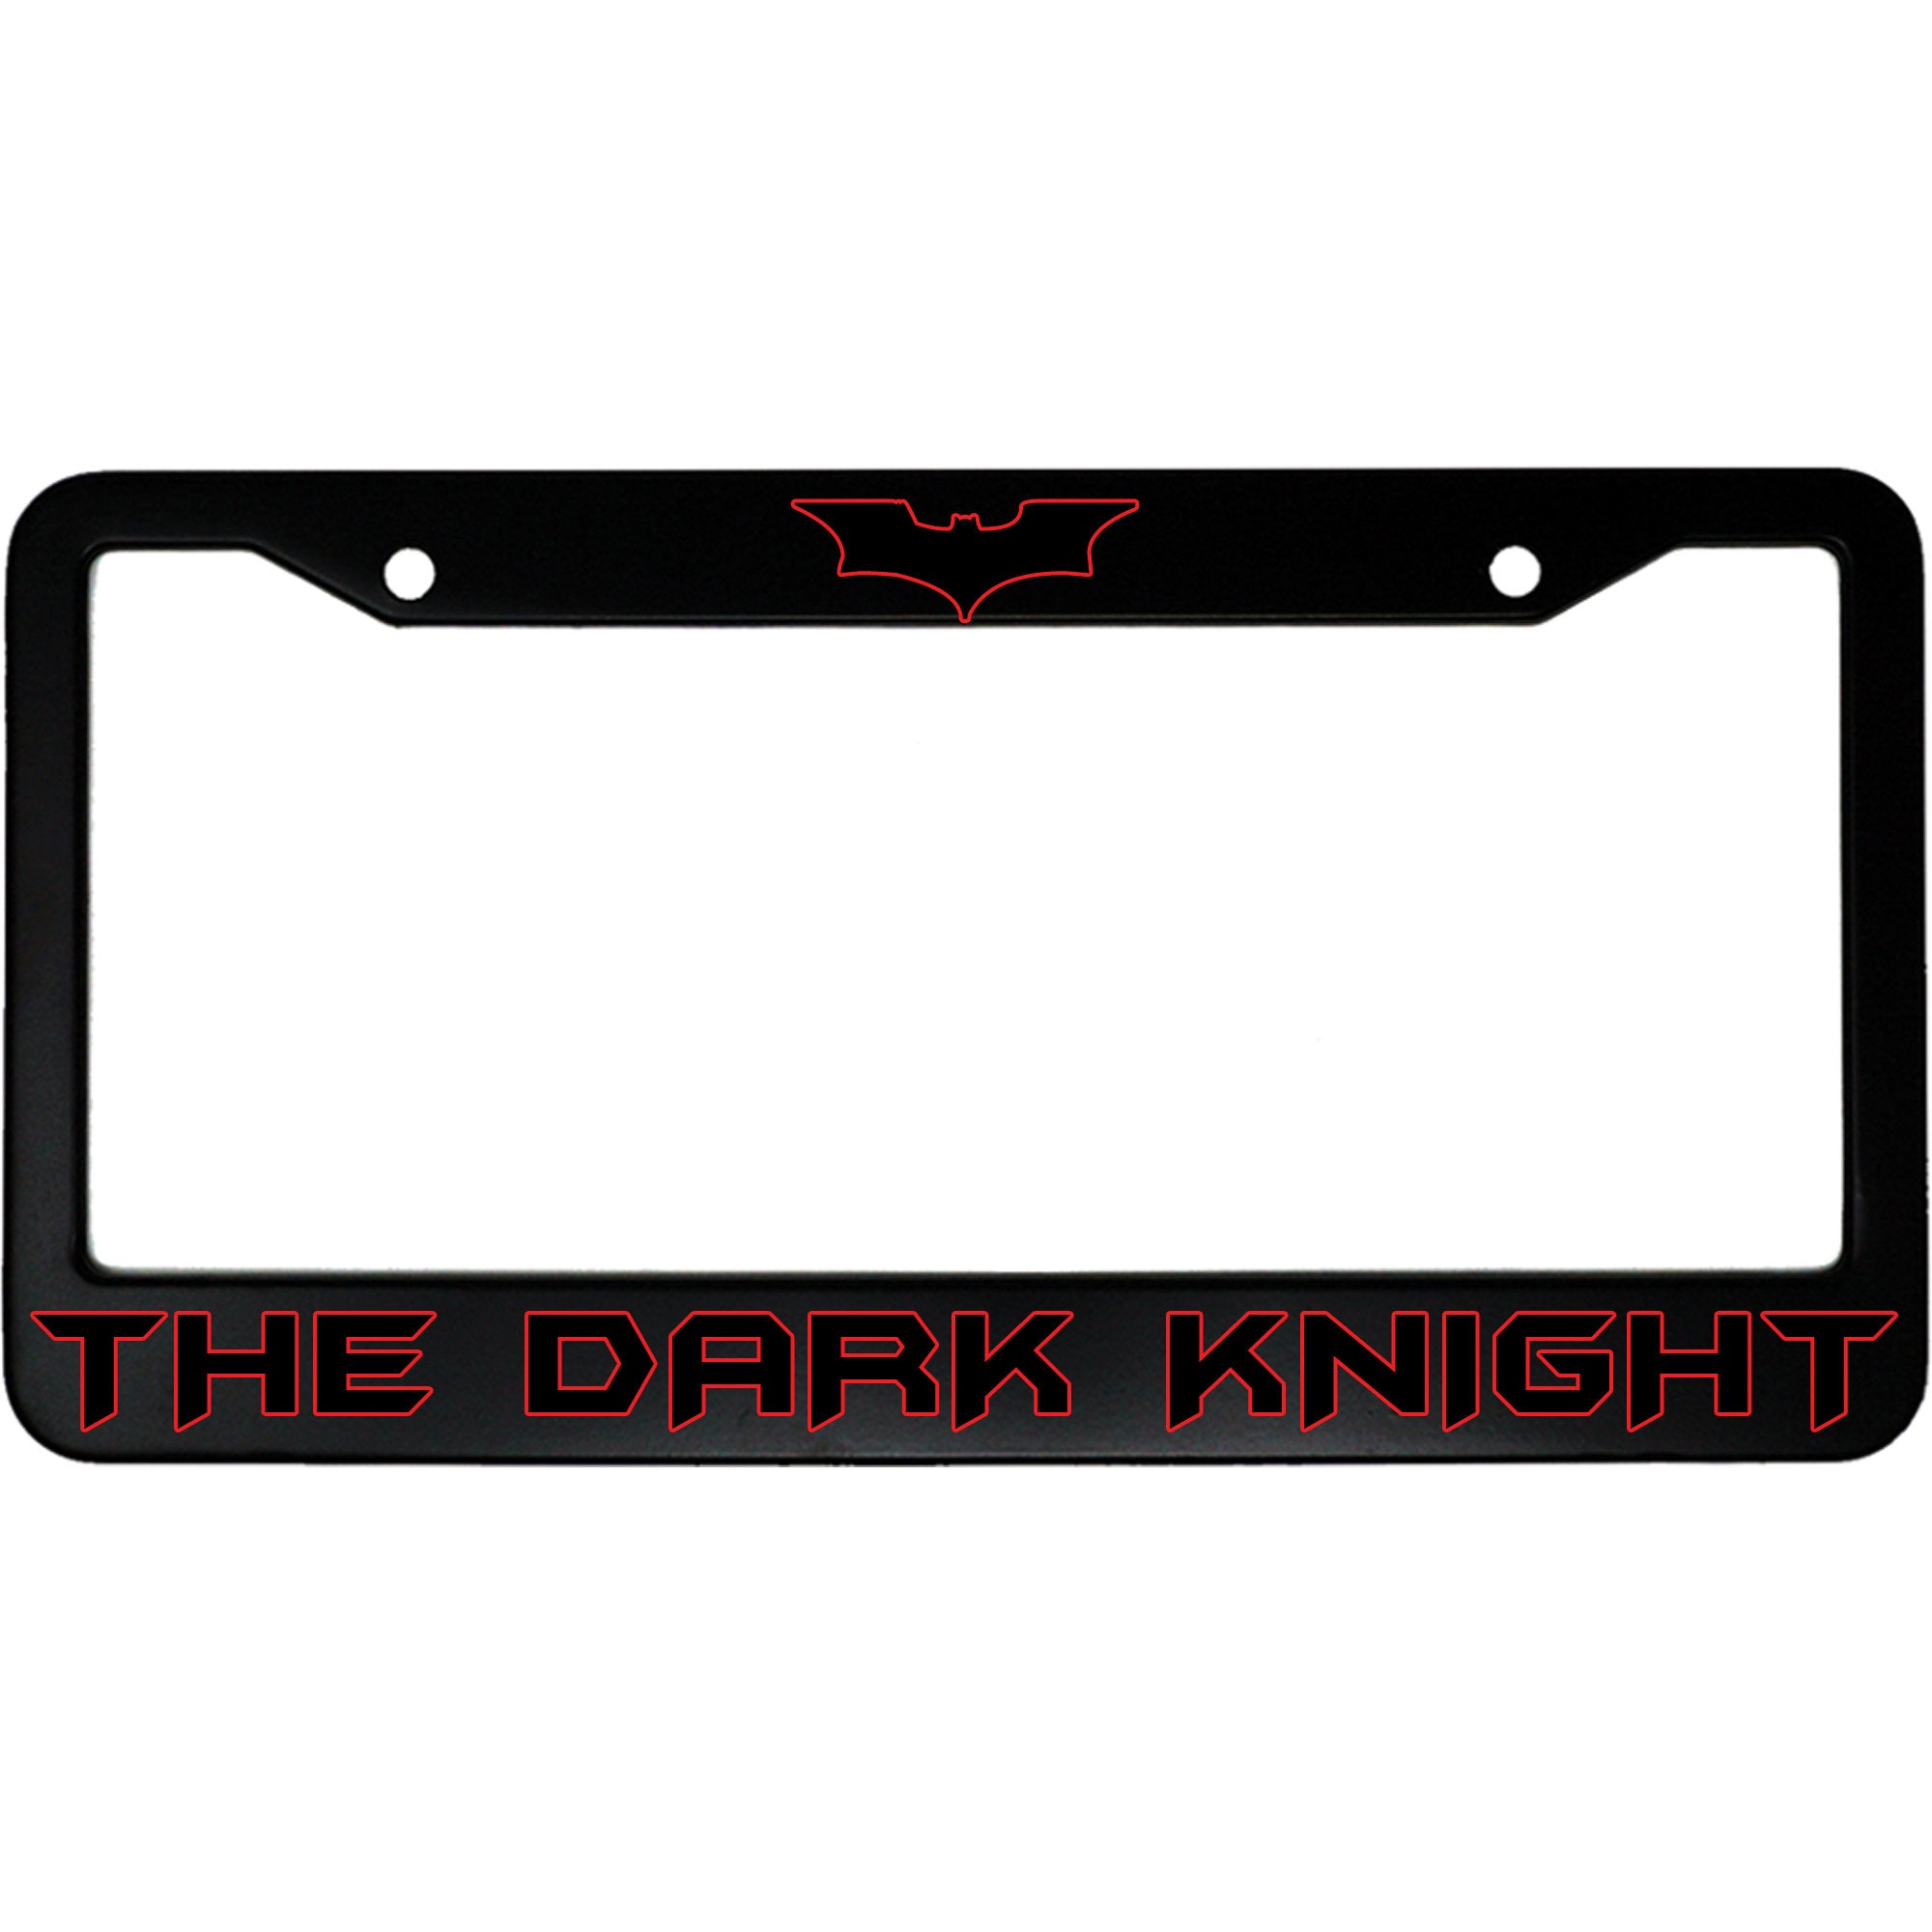 The Dark Knight (w/ Bat Symbol)